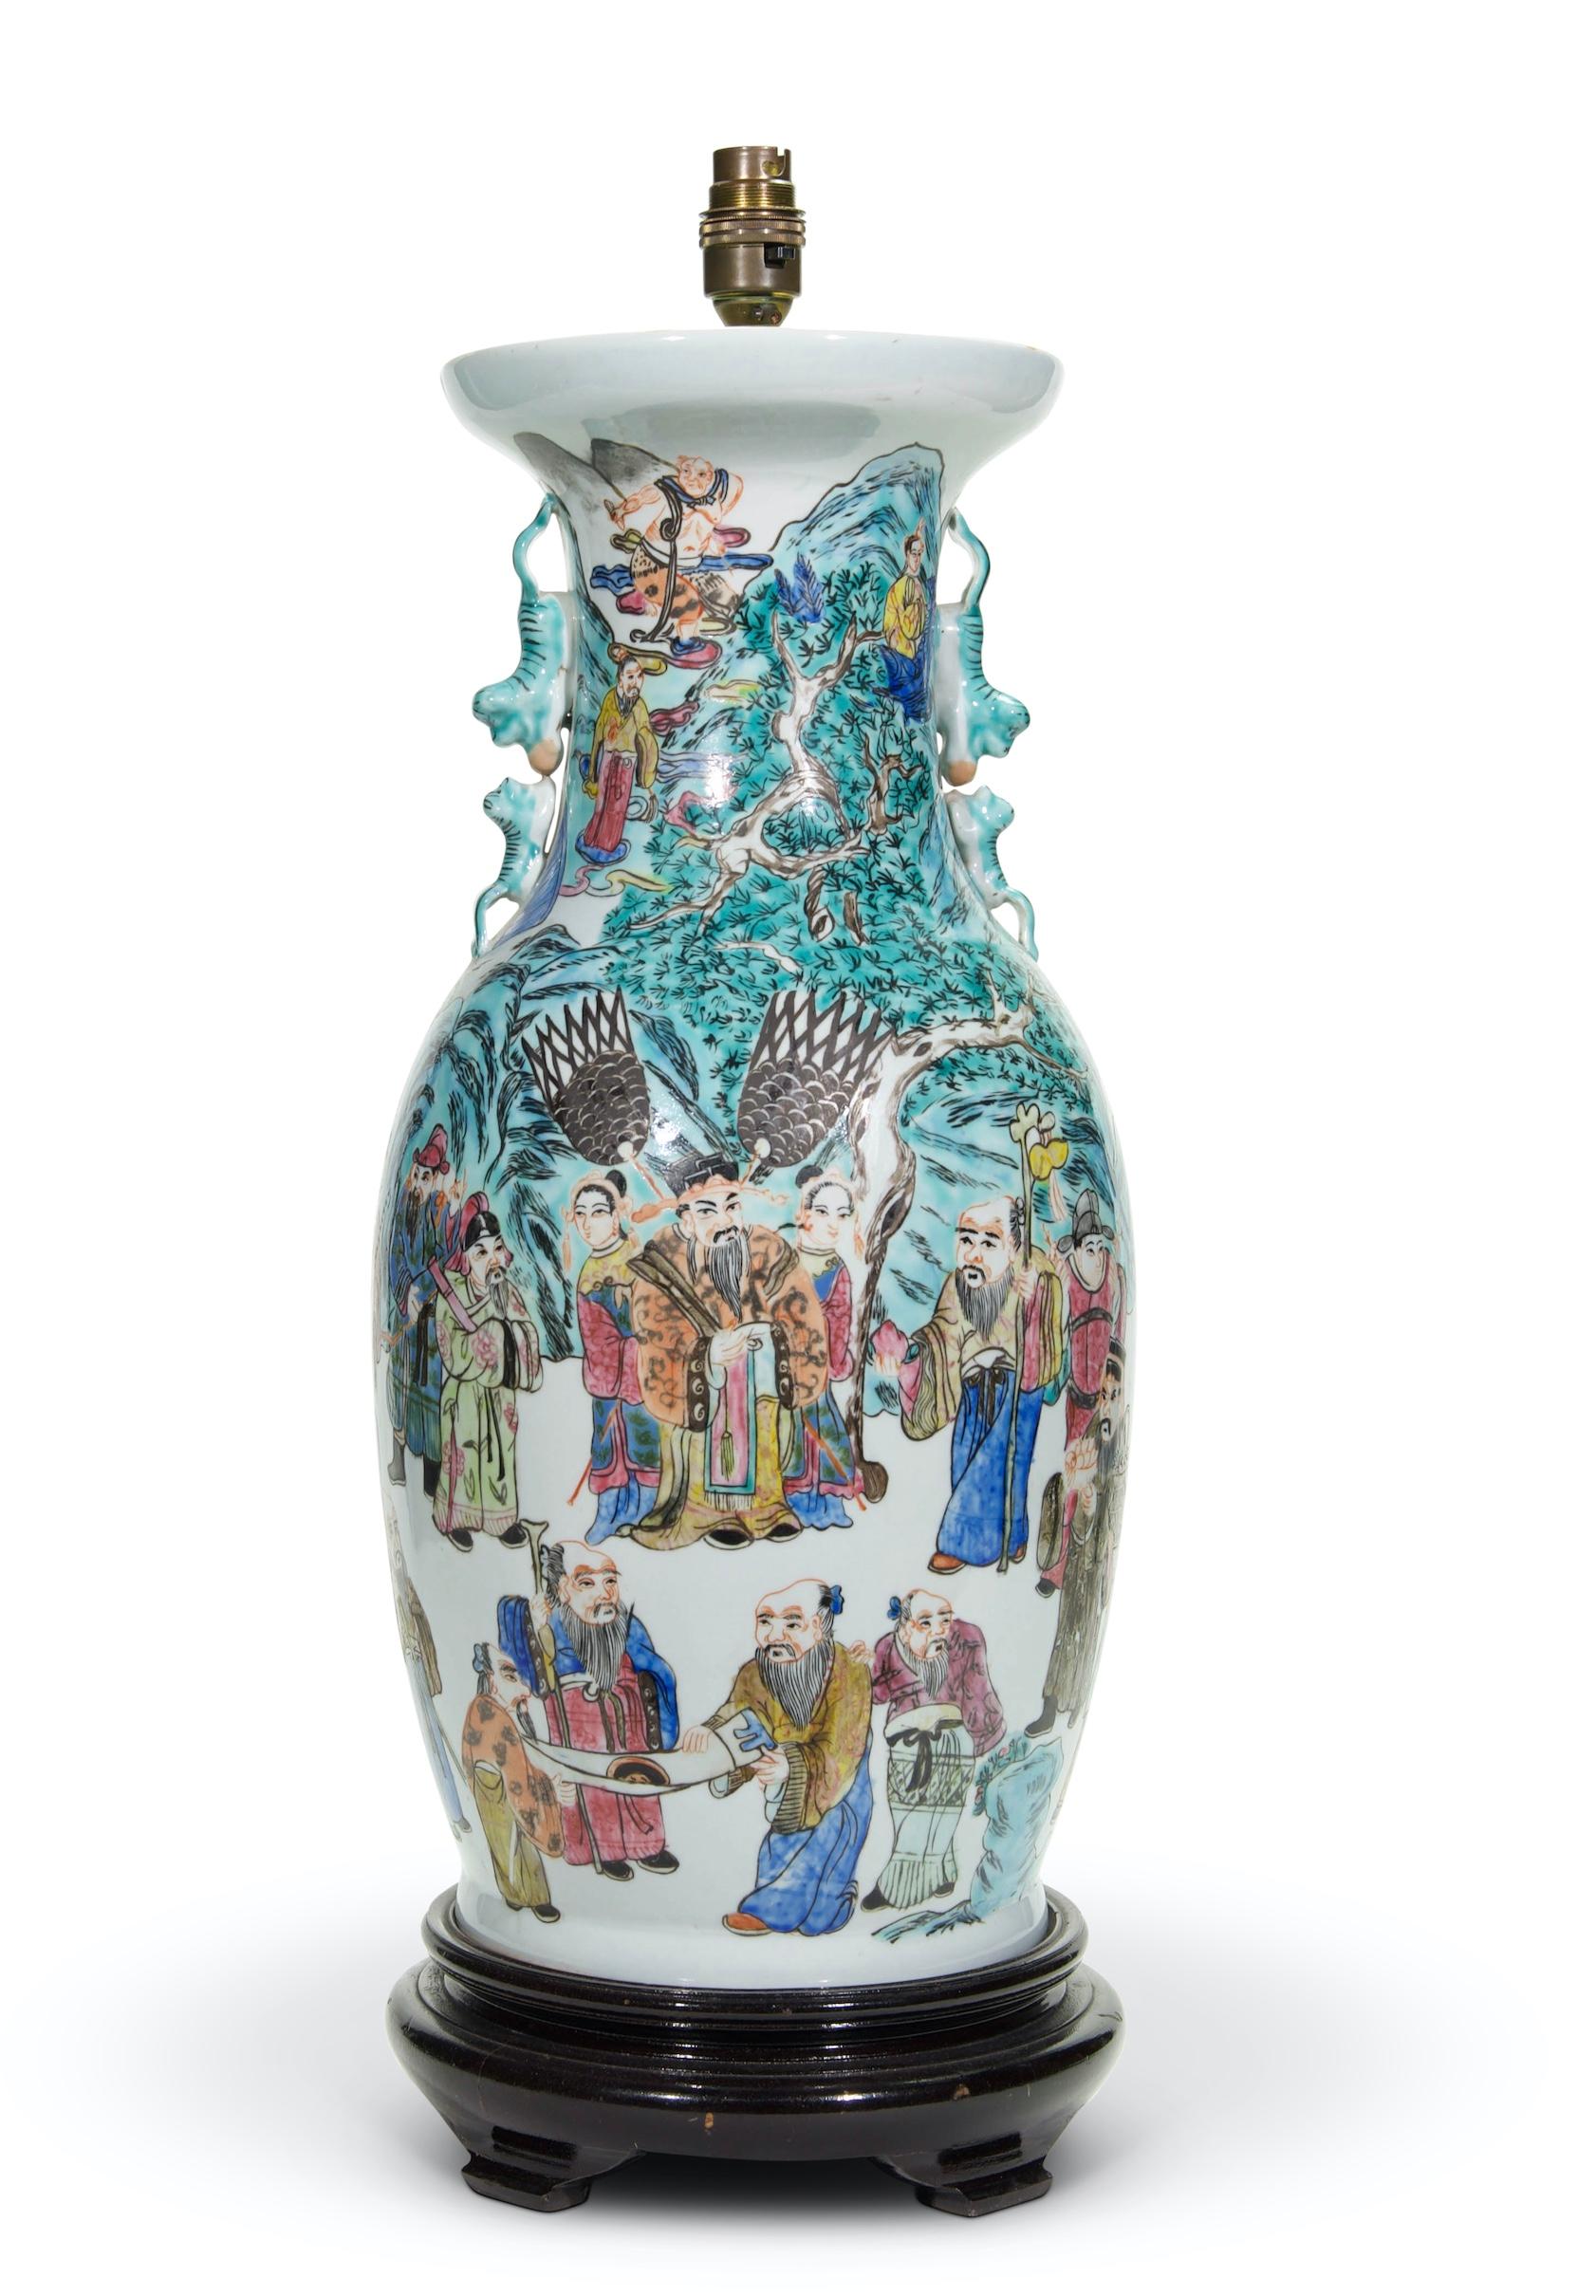 Un beau grand vase chinois de forme balustre, de la famille verte, magnifiquement décoré d'une procession de personnages chinois portant des vêtements traditionnels dans un paysage de collines, sur un fond blanc, avec des poignées de dragon stylisé